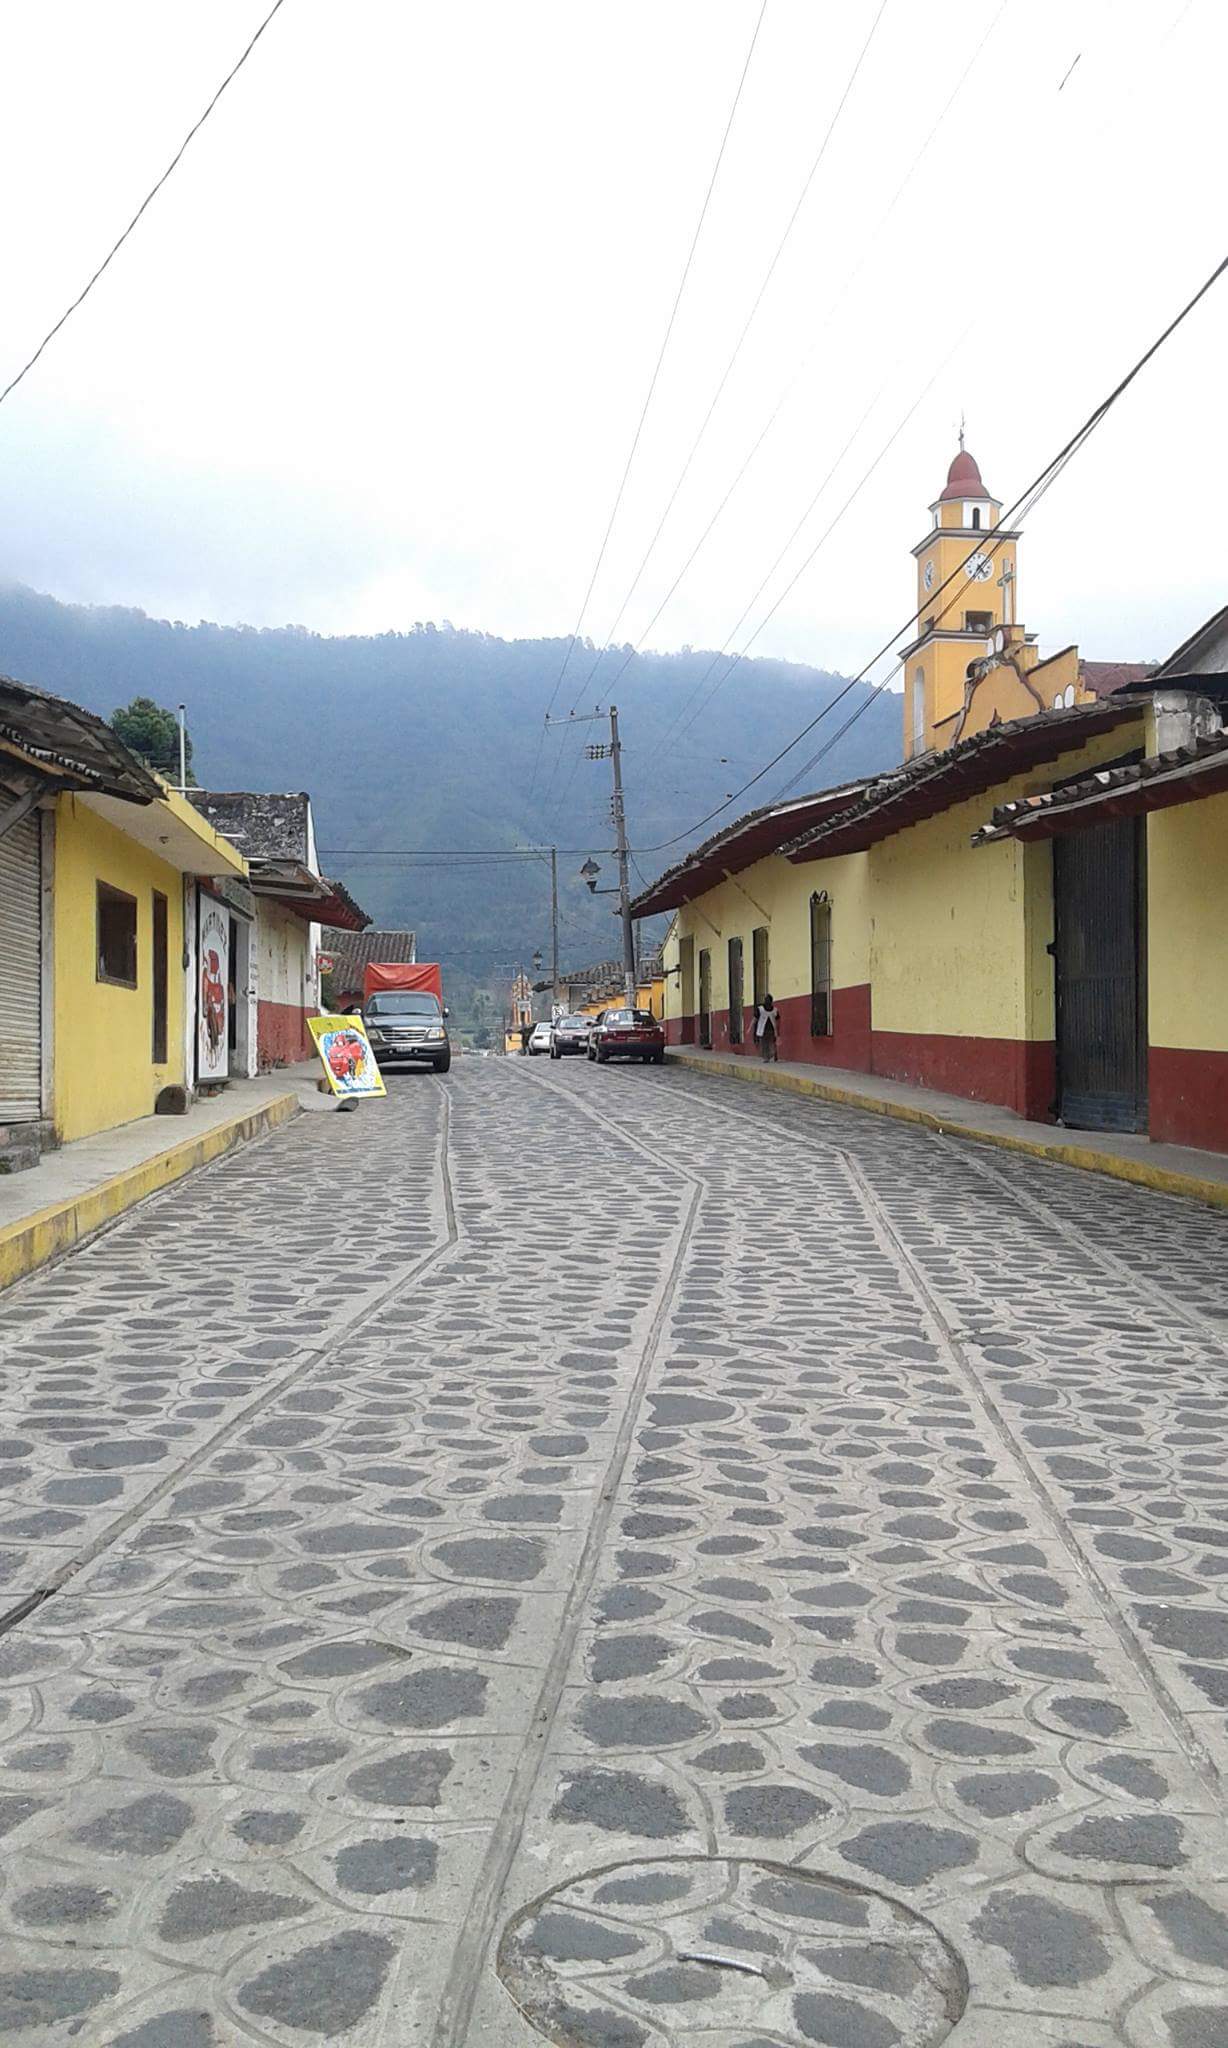 Casas y Calles Típicas de Ixhuacán